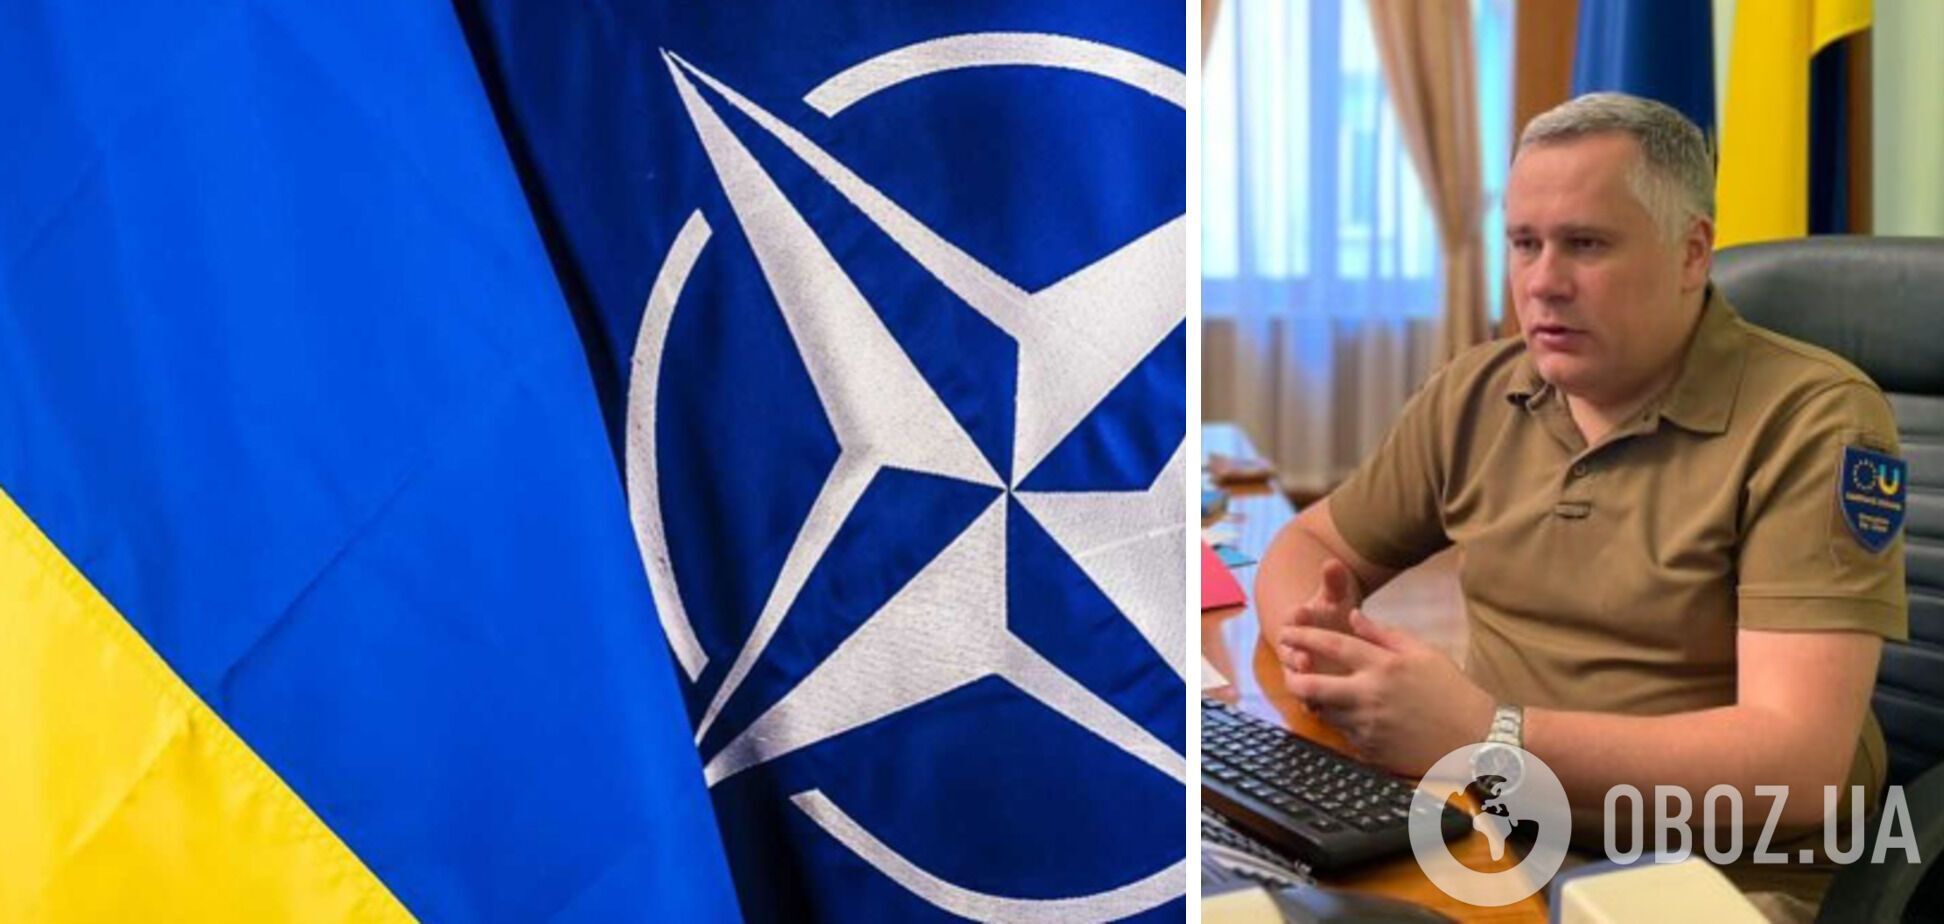 Игорь Жовква оптимистично настроен относительно вступления Украины в НАТО